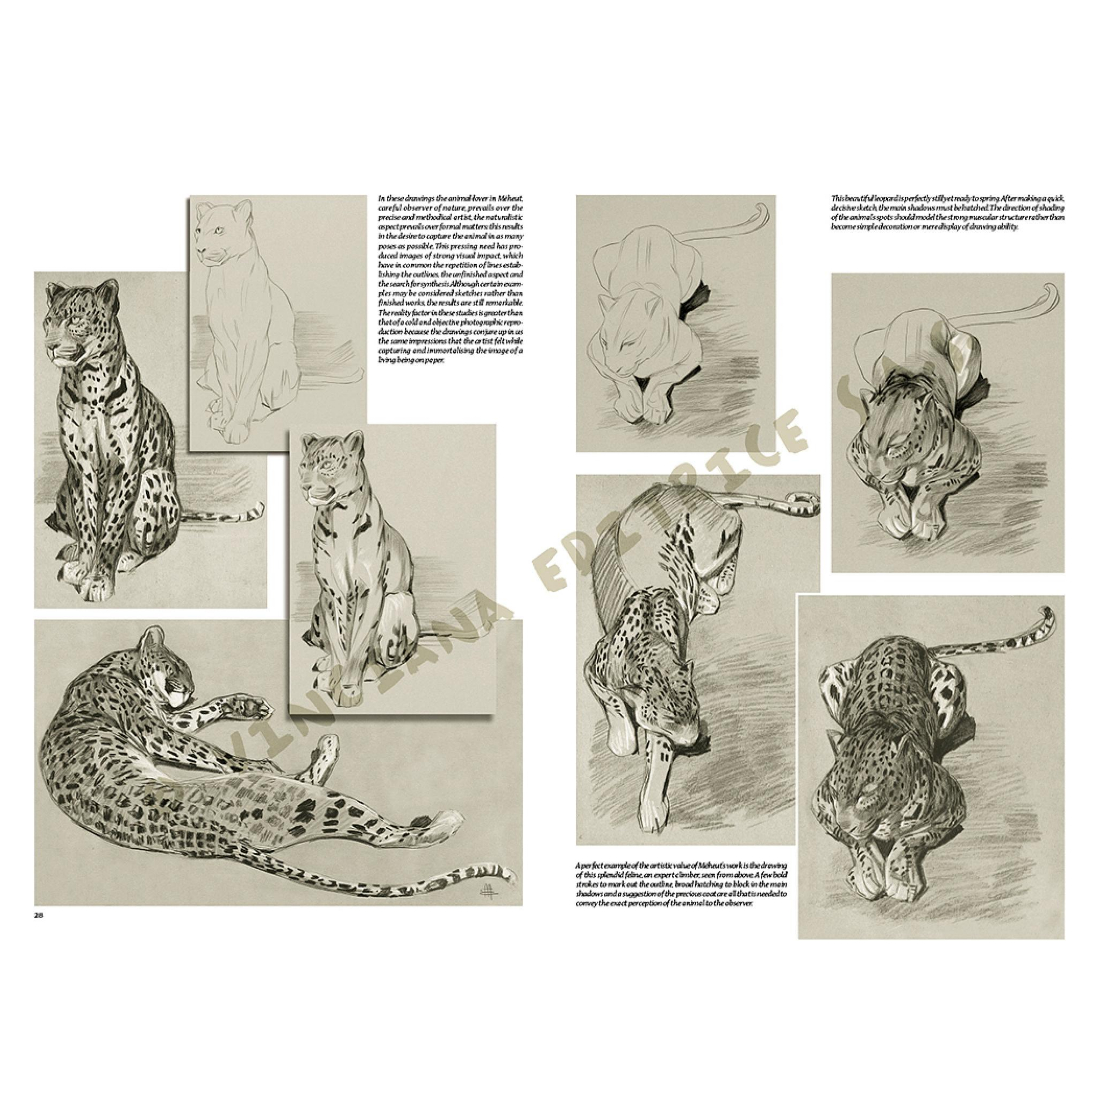 Livro Coleção Leonardo Nº 38 Animais de Mathurin edições vinciana